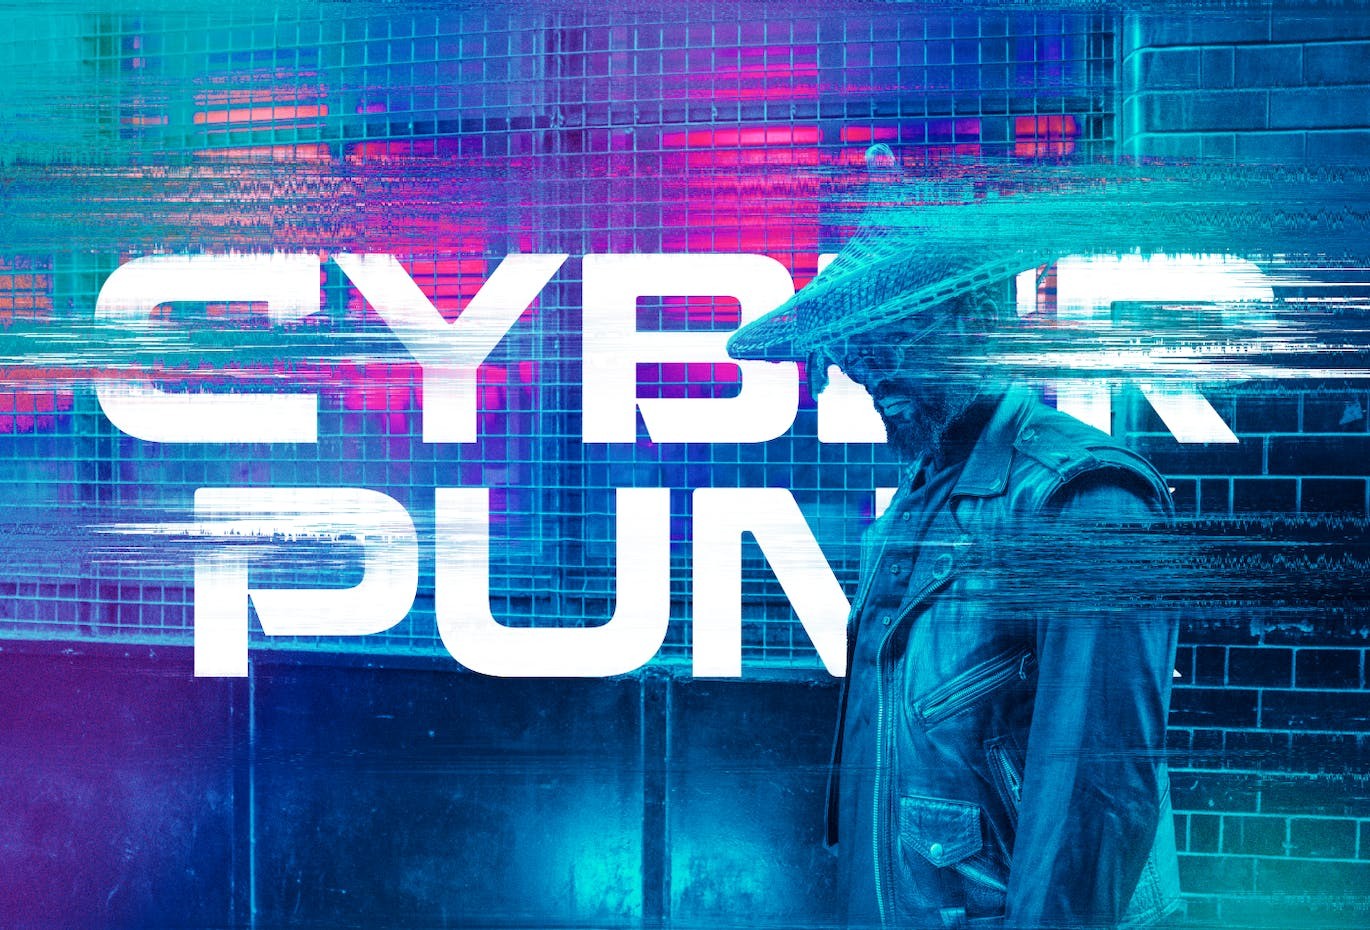 Cyberpunk赛博朋克故障特效图层样式PSD 图片素材 第9张